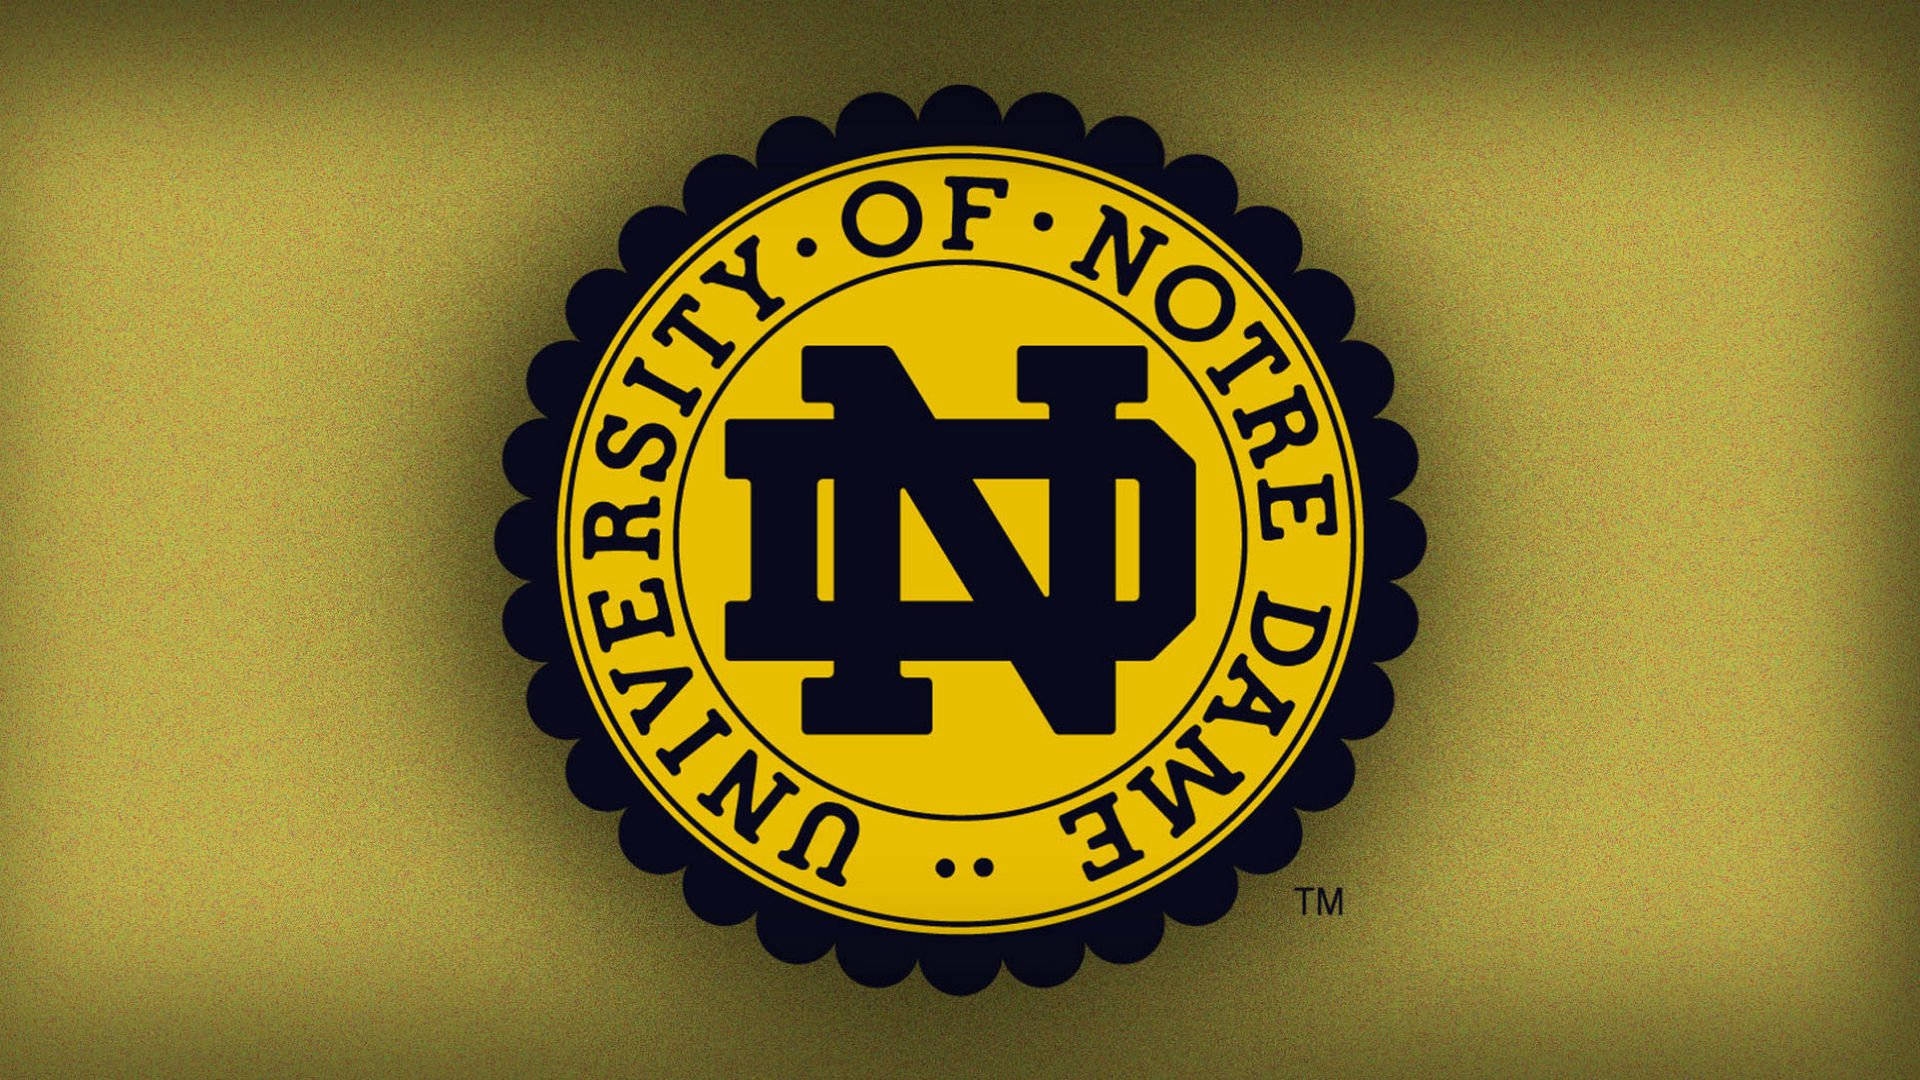 Ologotipo Da Universidade De Notre Dame É Exibido Em Um Fundo Amarelo. Papel de Parede